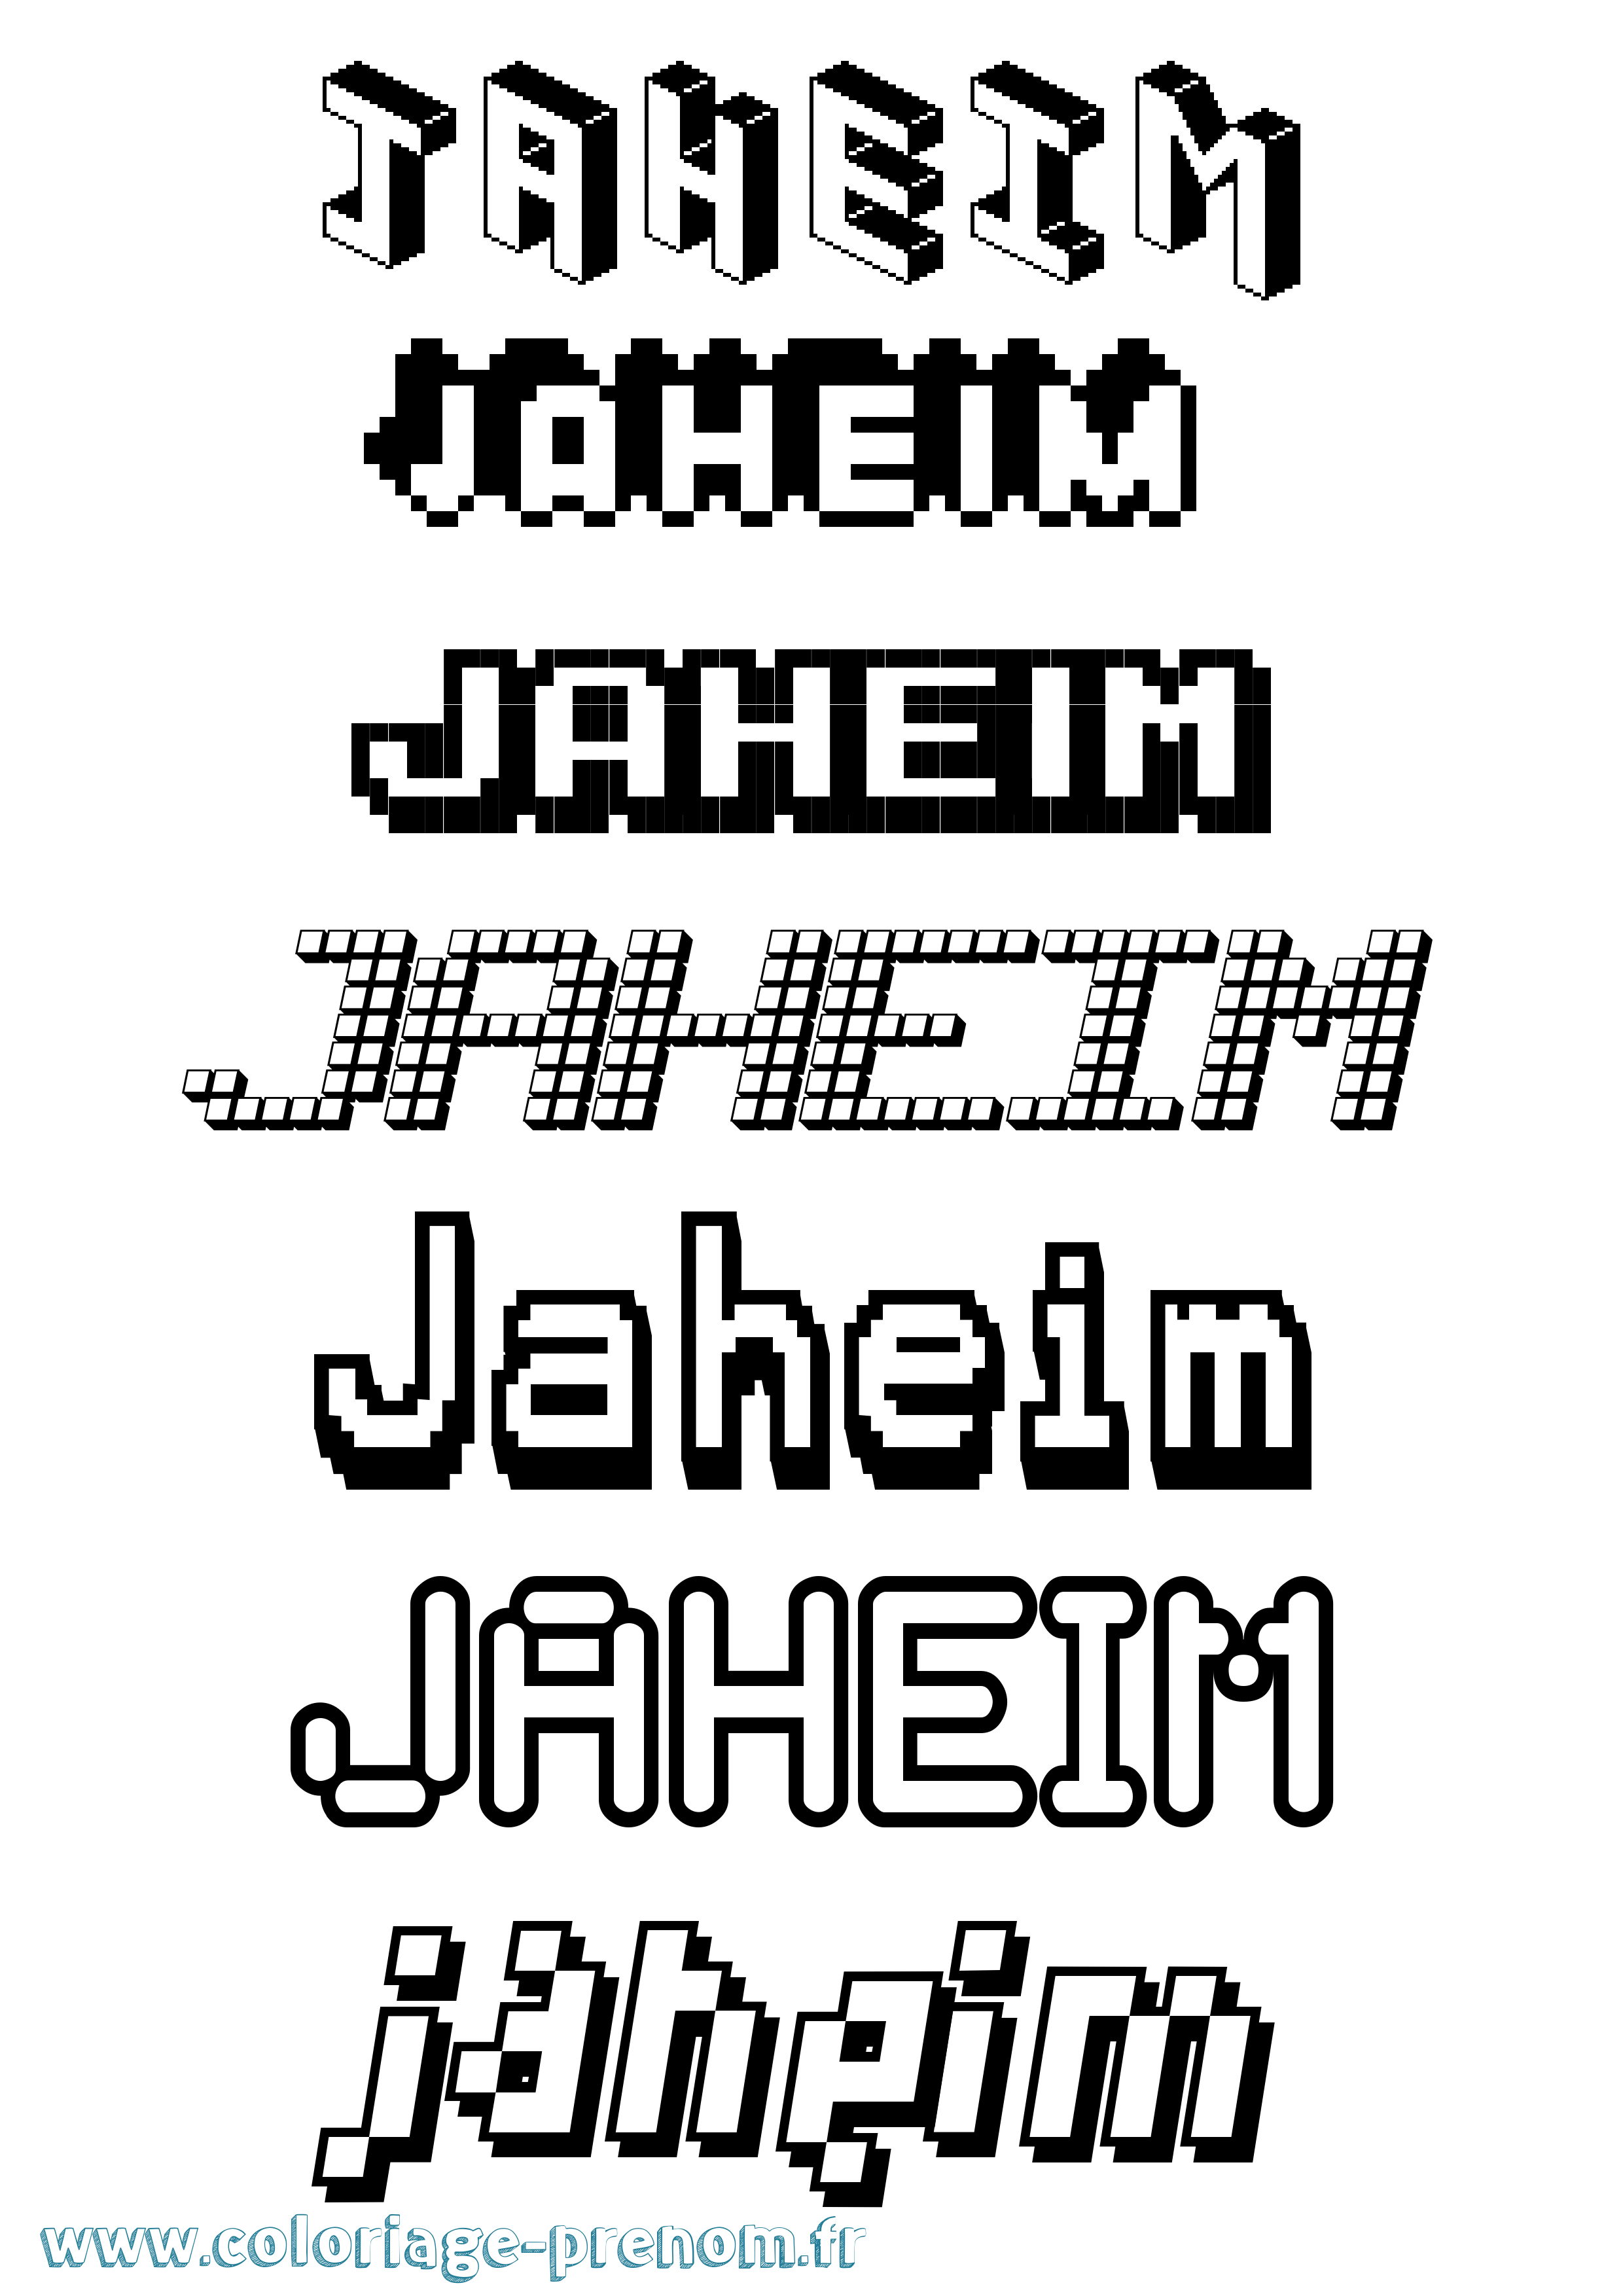 Coloriage prénom Jaheim Pixel